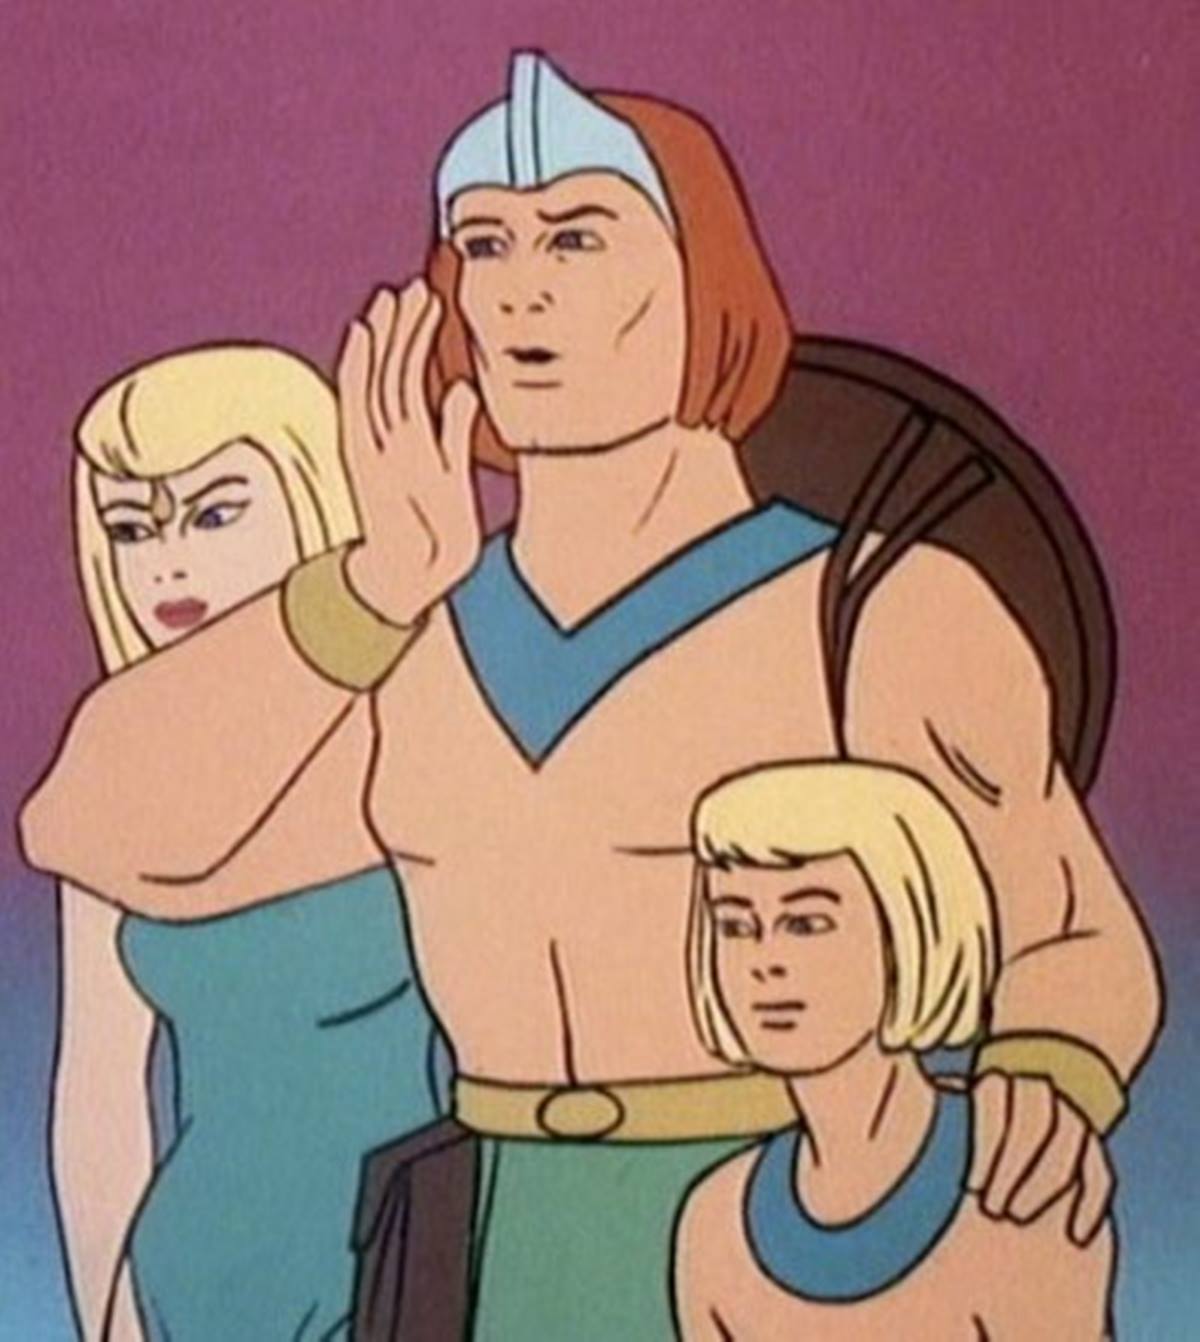 Imagem colorida dos personagens do desenho "Os Herculóides", de 1967 - Metrópoles